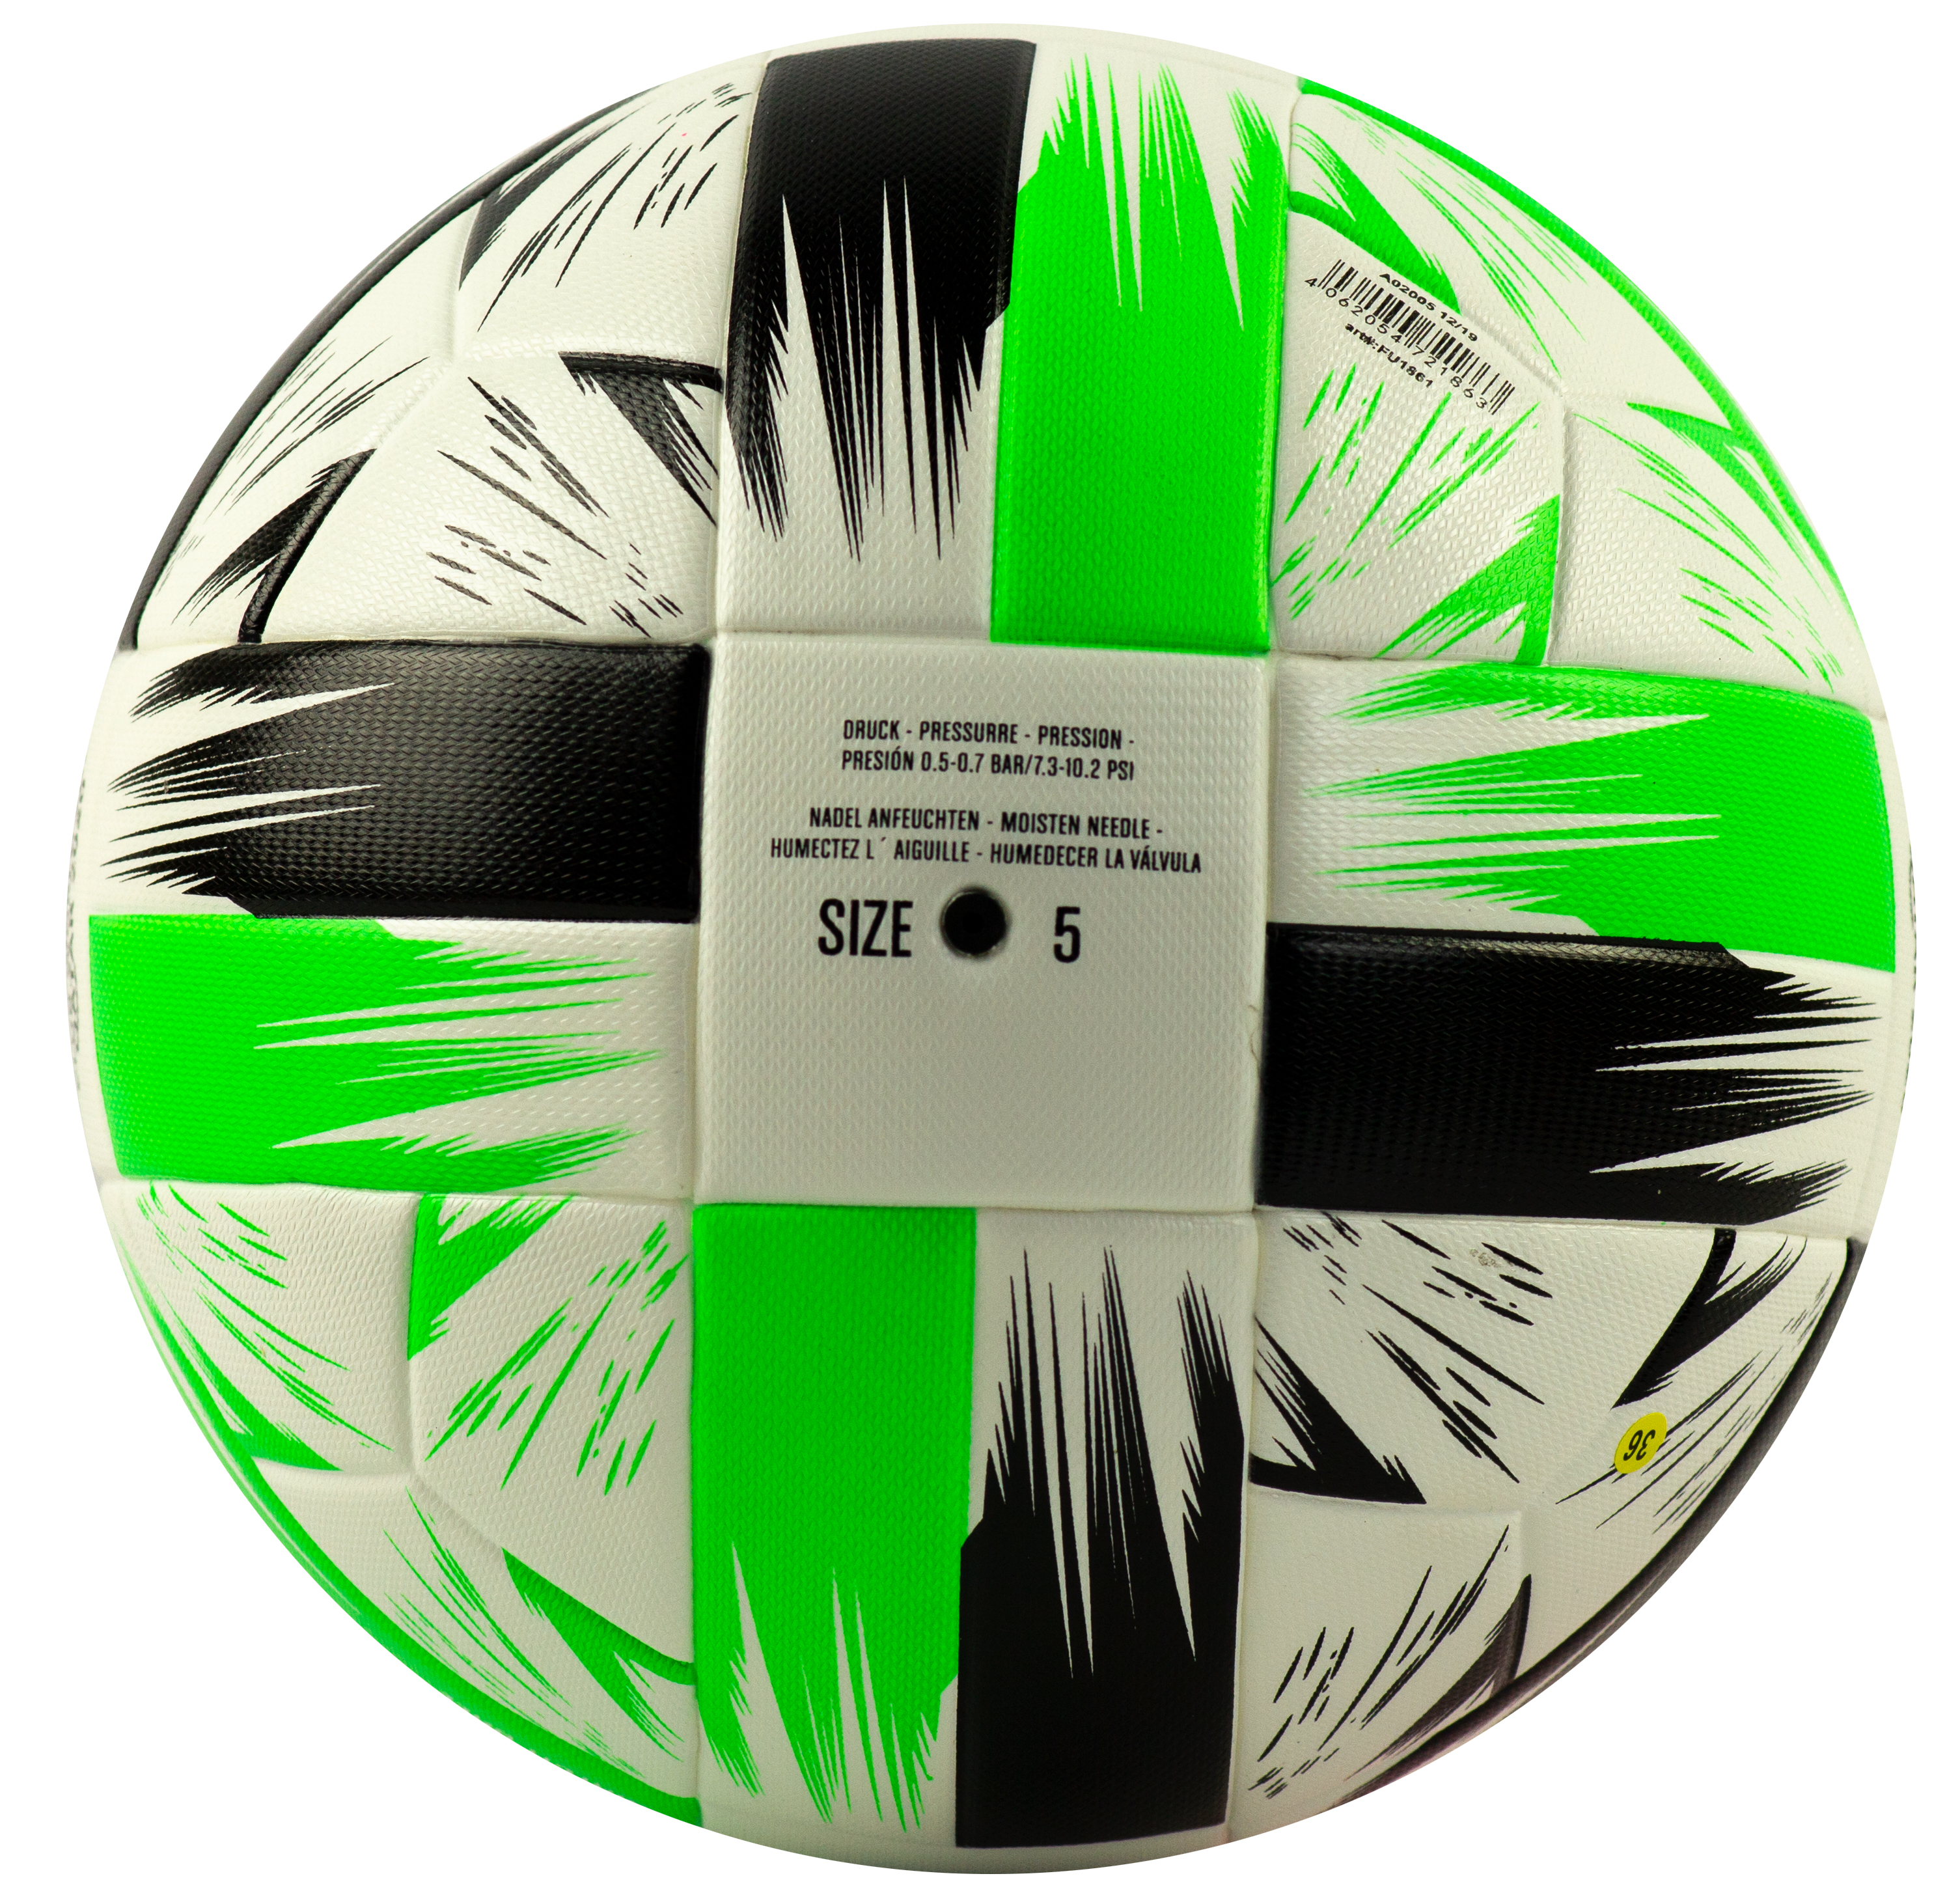 Футбольный мяч «Club World Cup Qatar 2020» размер 5, 16 панелей, F33940 / Микс